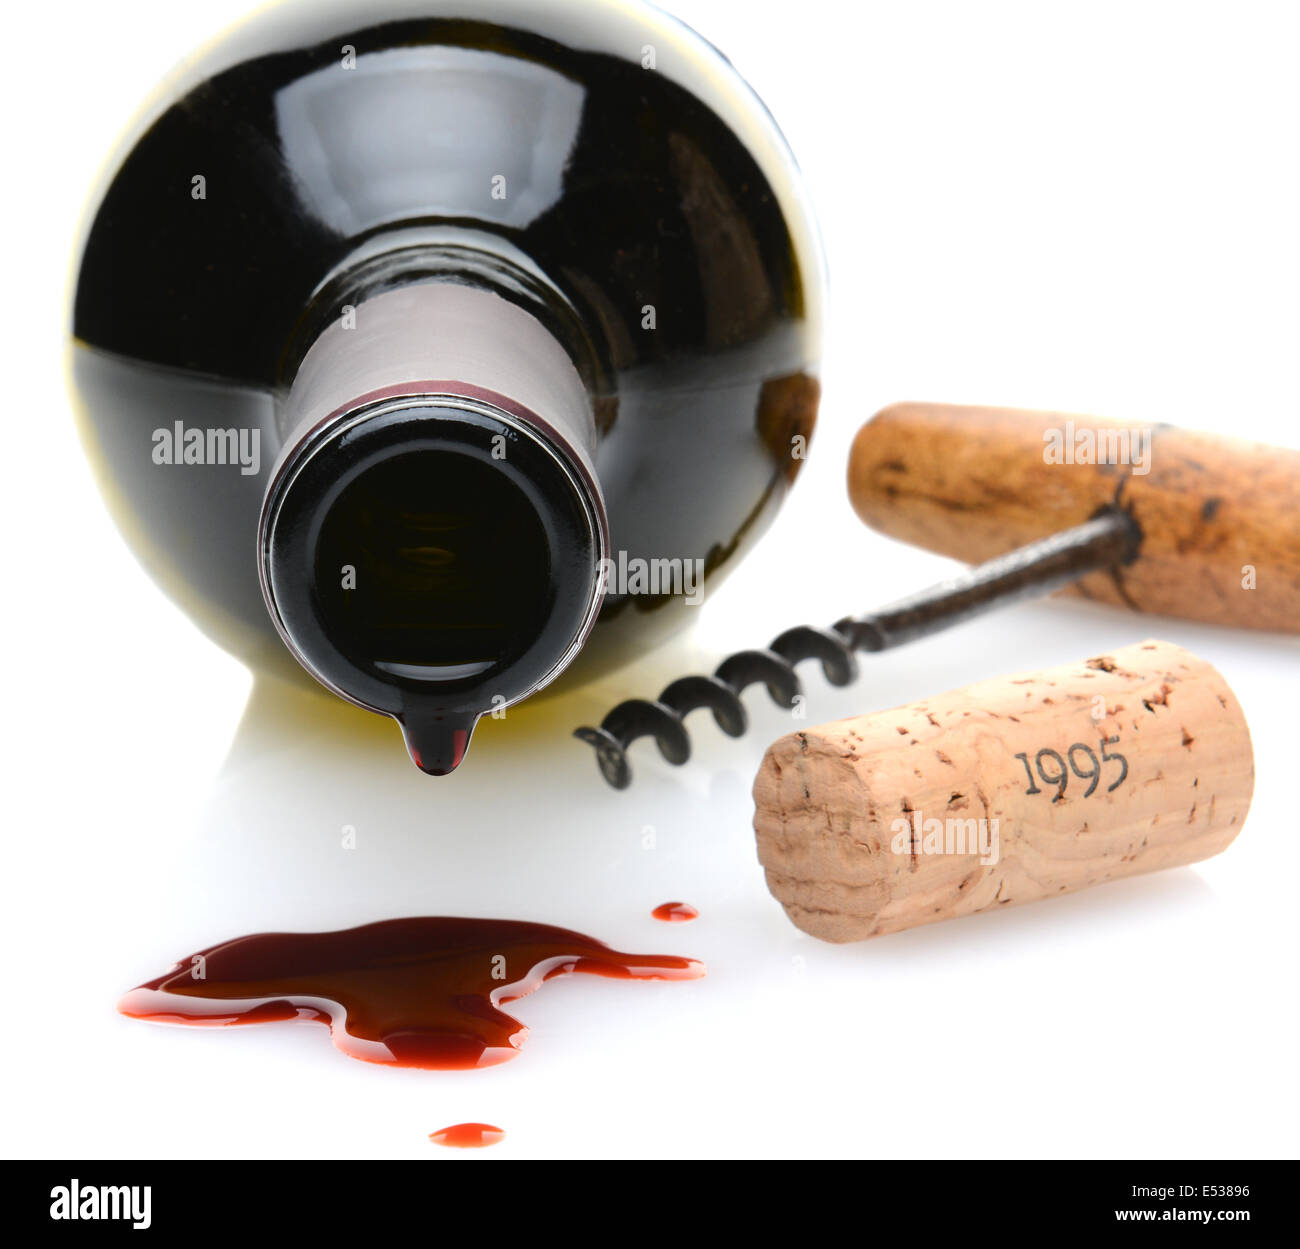 Libre d'une bouteille de vin rouge avec une goutte de vin et marée noire dans l'avant-plan. Un tire-bouchon et du liège d'un côté Banque D'Images